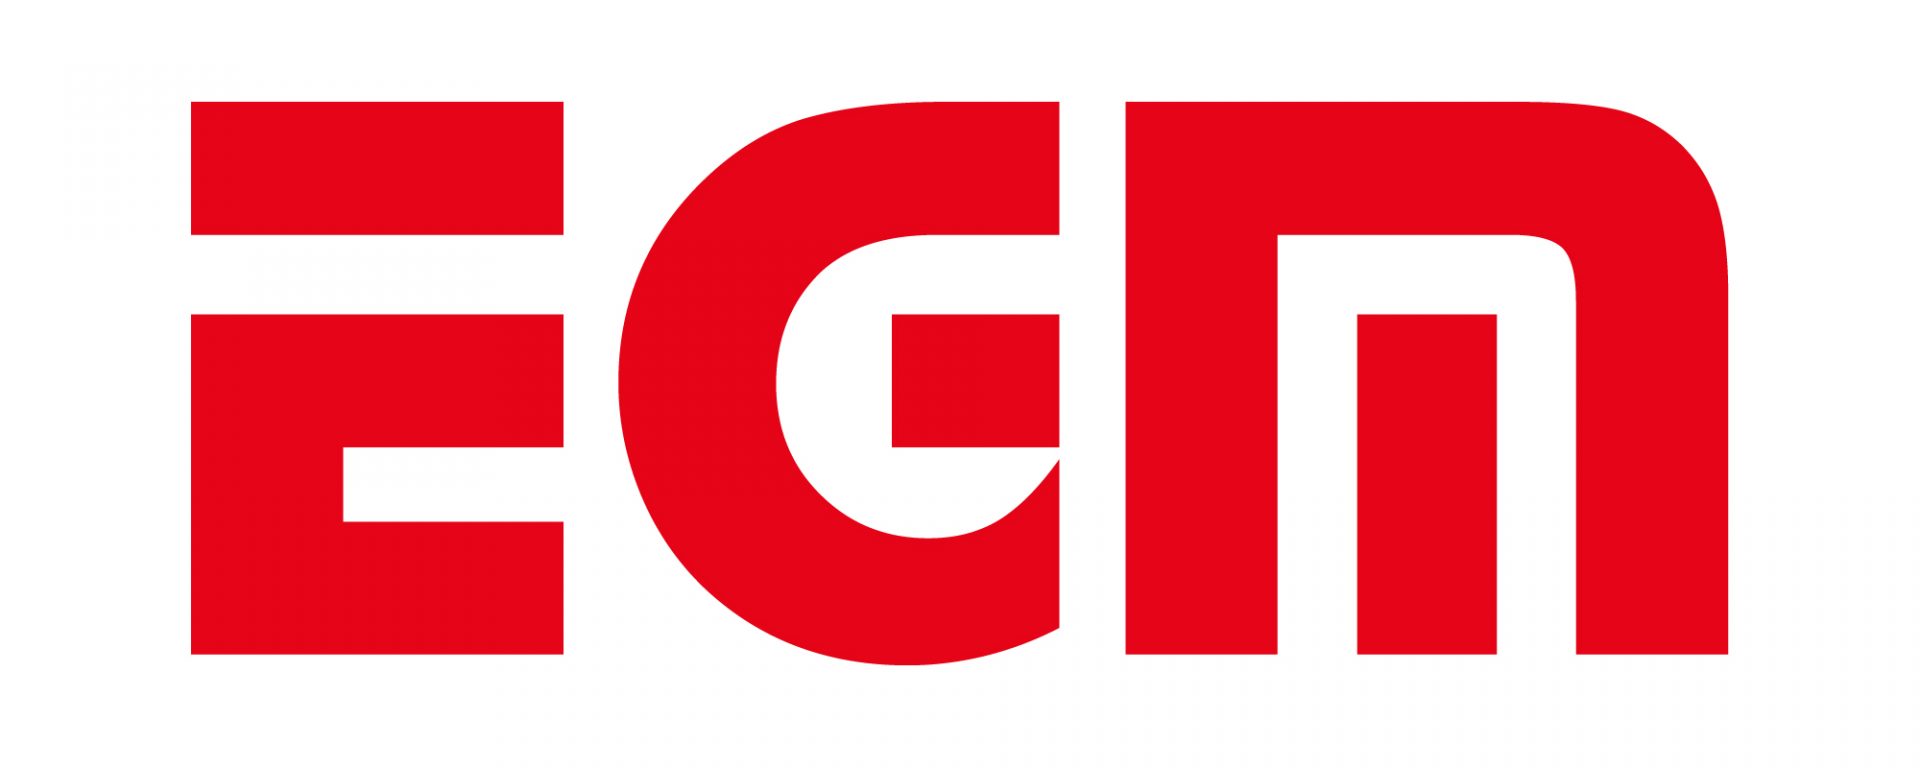 EGM_logo_2021-1-scaled.jpg